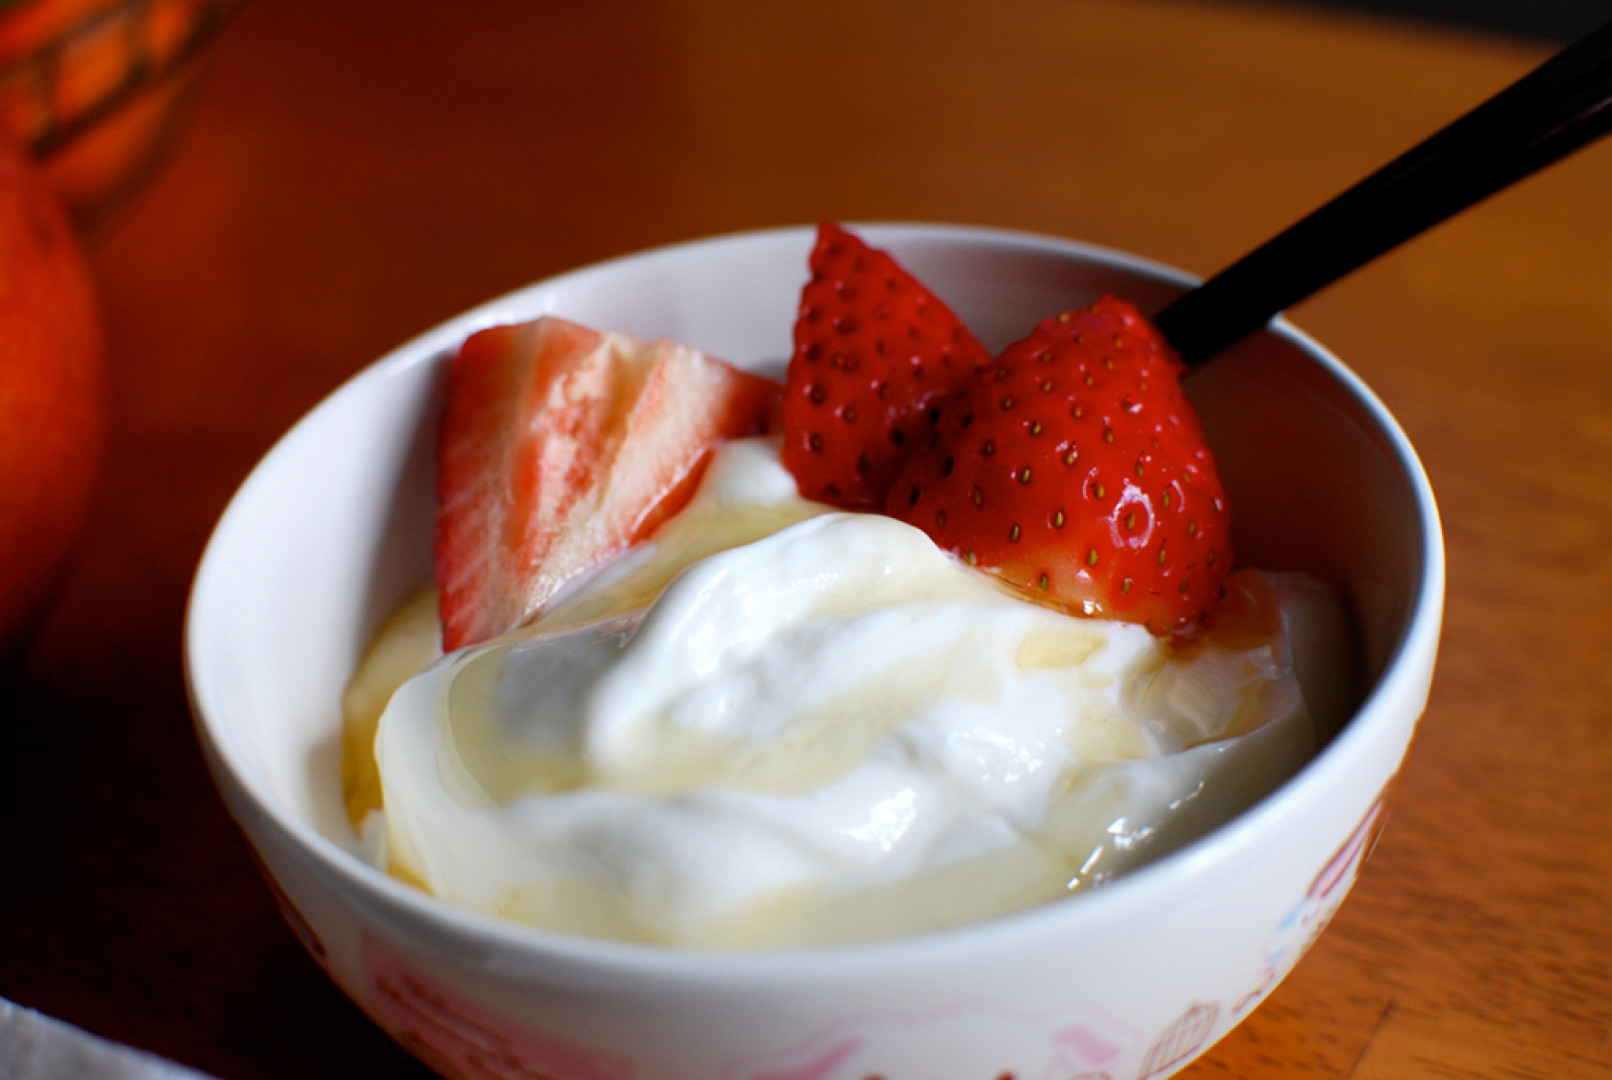 Greek yogurt. Йогурт. Домашний йогурт. Греческий йогурт. Греческий йогурт домашний.